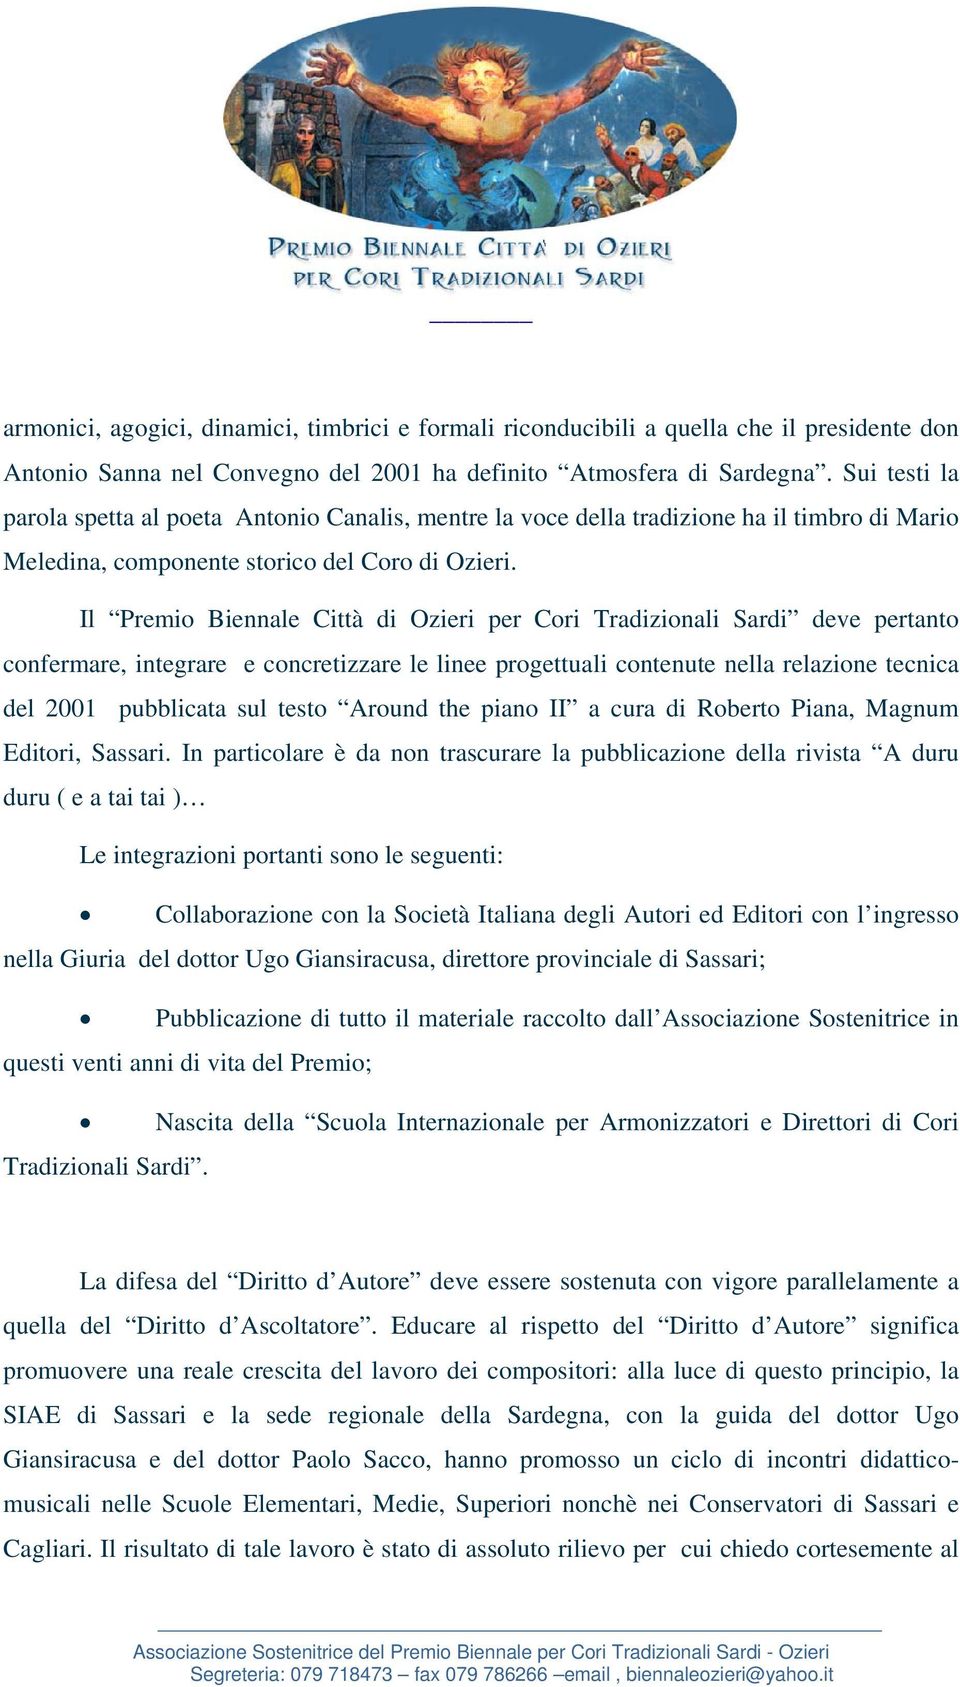 Il Premio Biennale Città di Ozieri per Cori Tradizionali Sardi deve pertanto confermare, integrare e concretizzare le linee progettuali contenute nella relazione tecnica del 2001 pubblicata sul testo